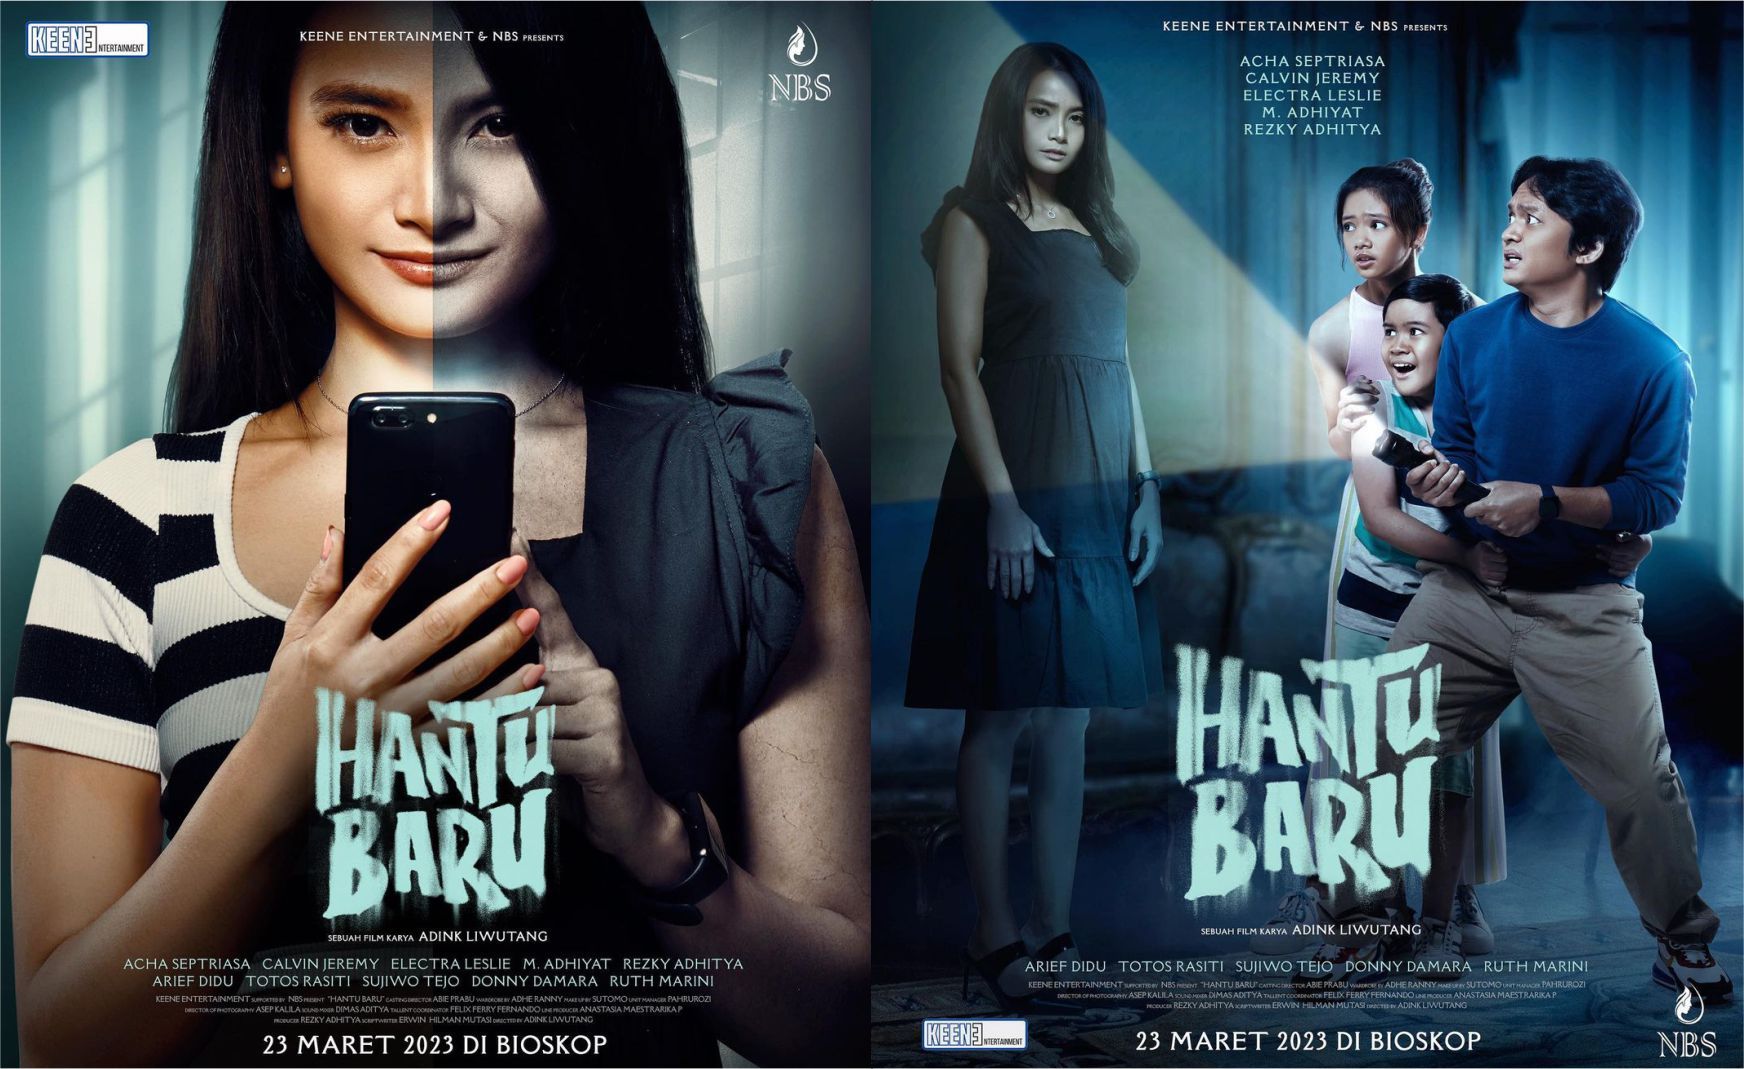 Jadwal Tayang dan Harga Tiket Film Hantu Baru di bioskop Cinepolis